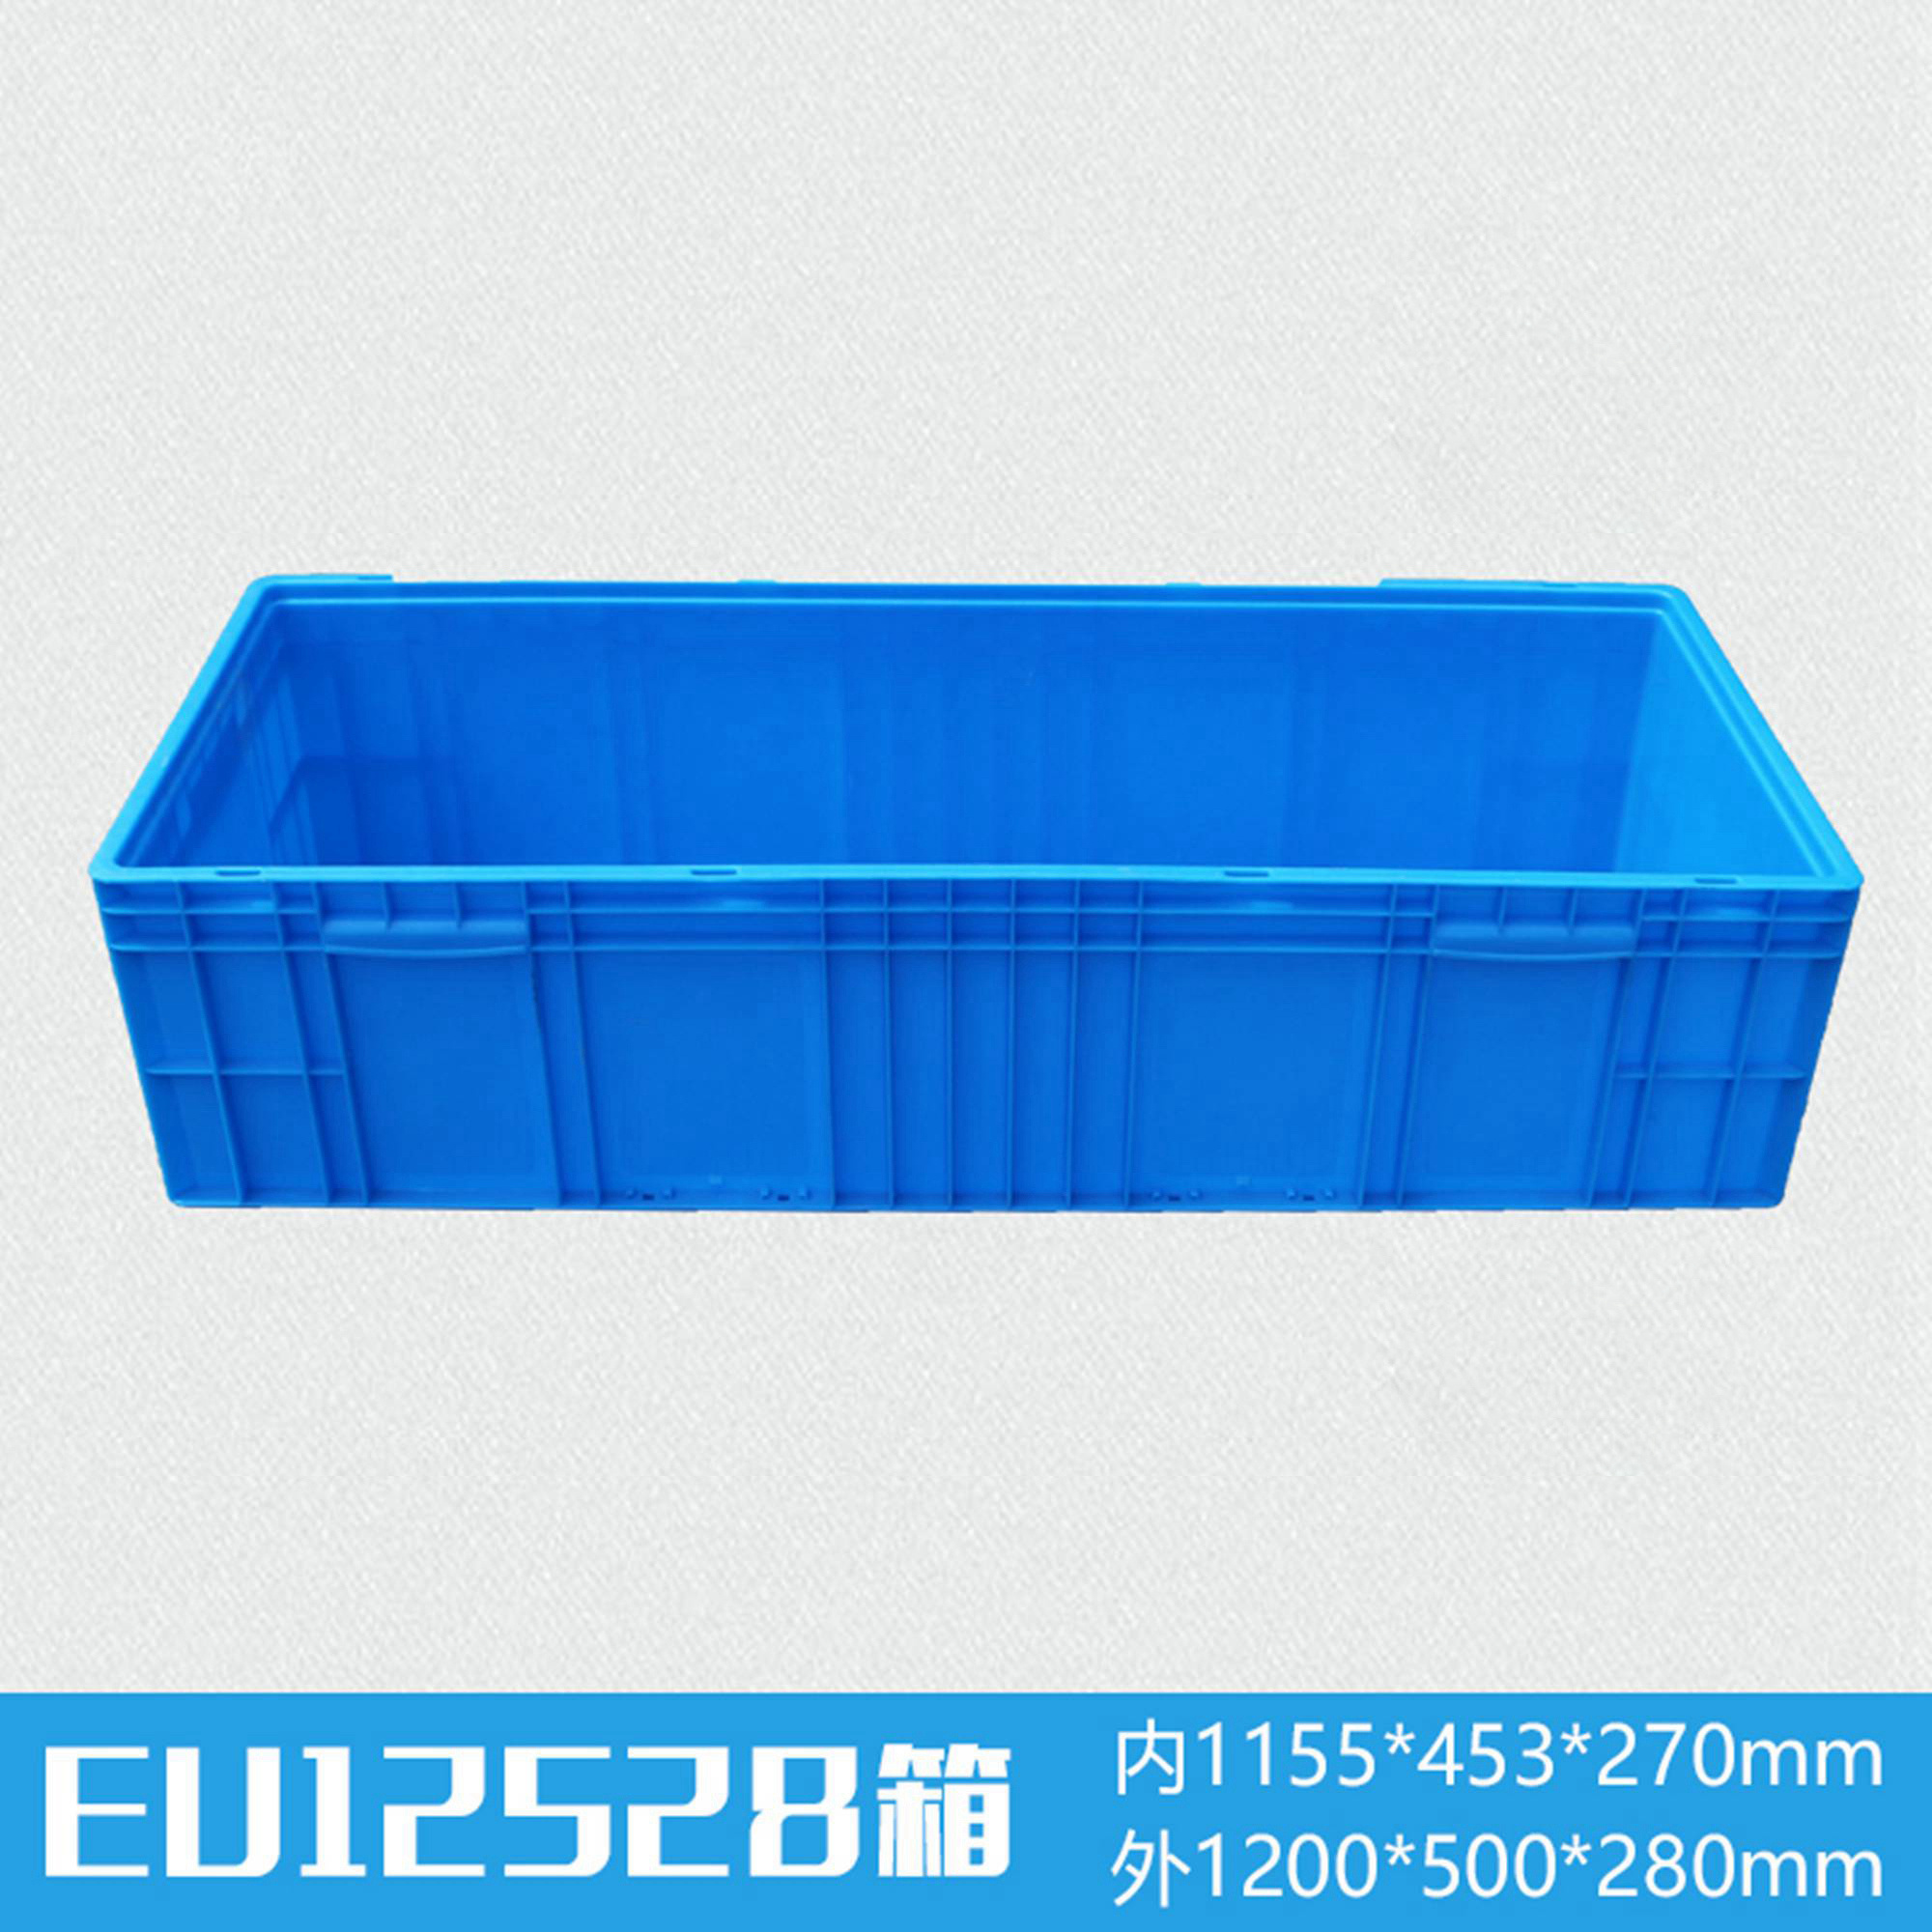 轩盛塑业EU12528塑料物流箱